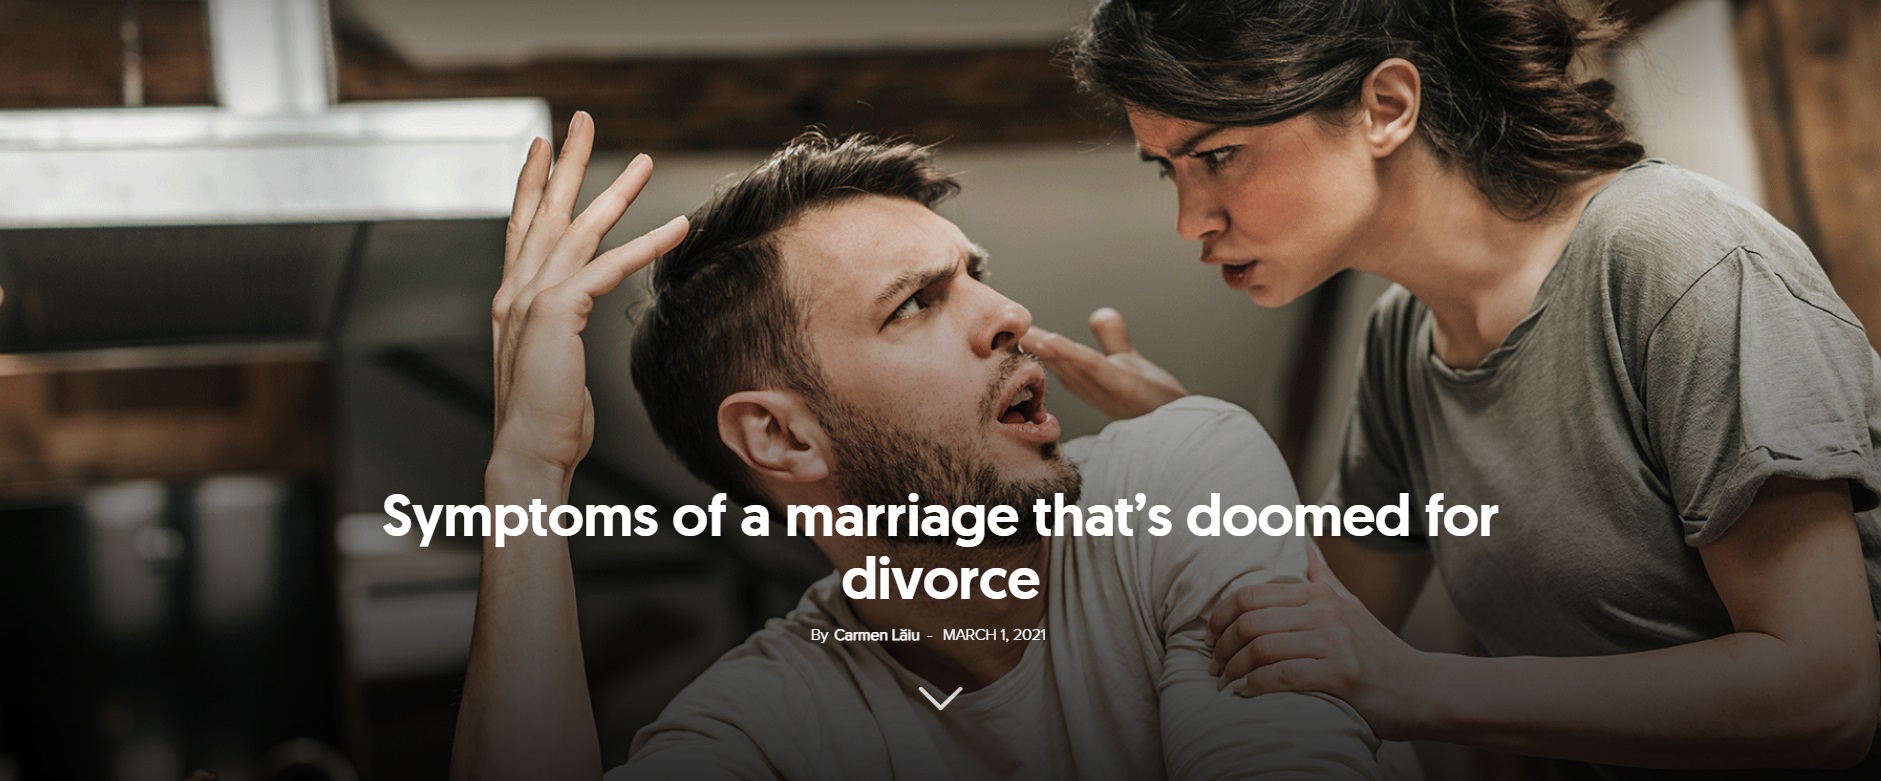 marital conflicts